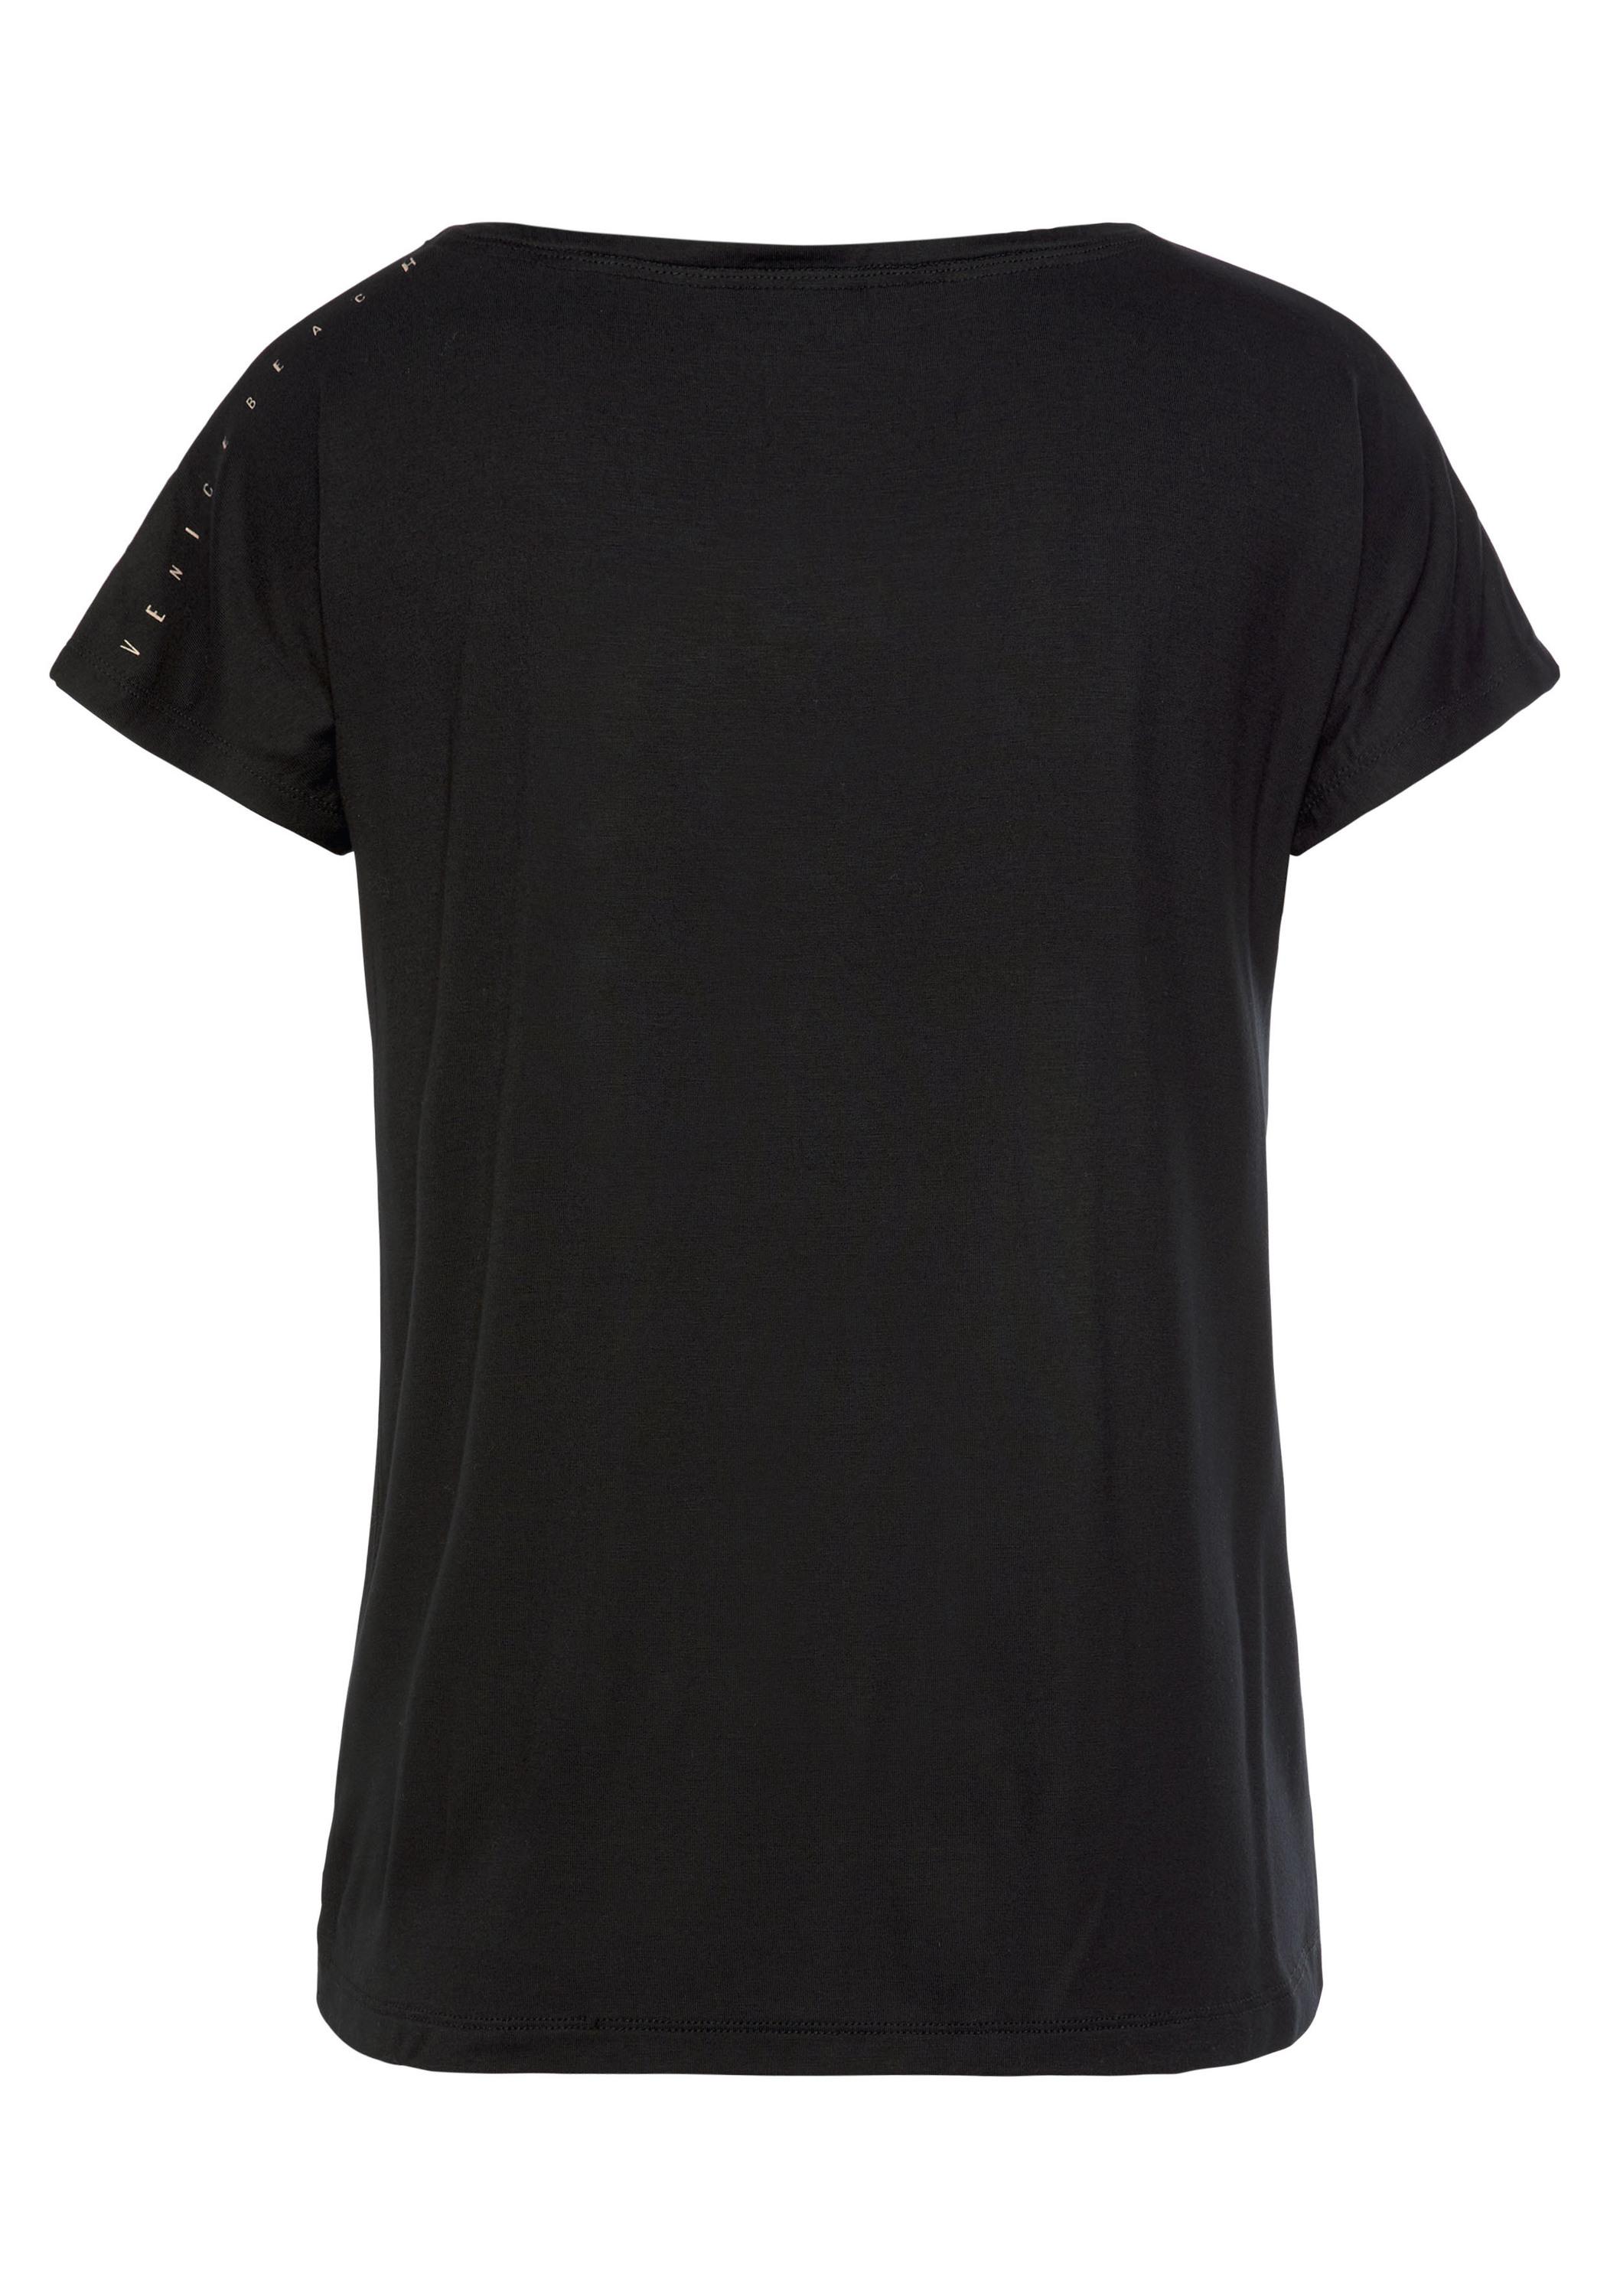 VENICE BEACH im Shop schwarz Online SportScheck T-Shirt Damen kaufen von